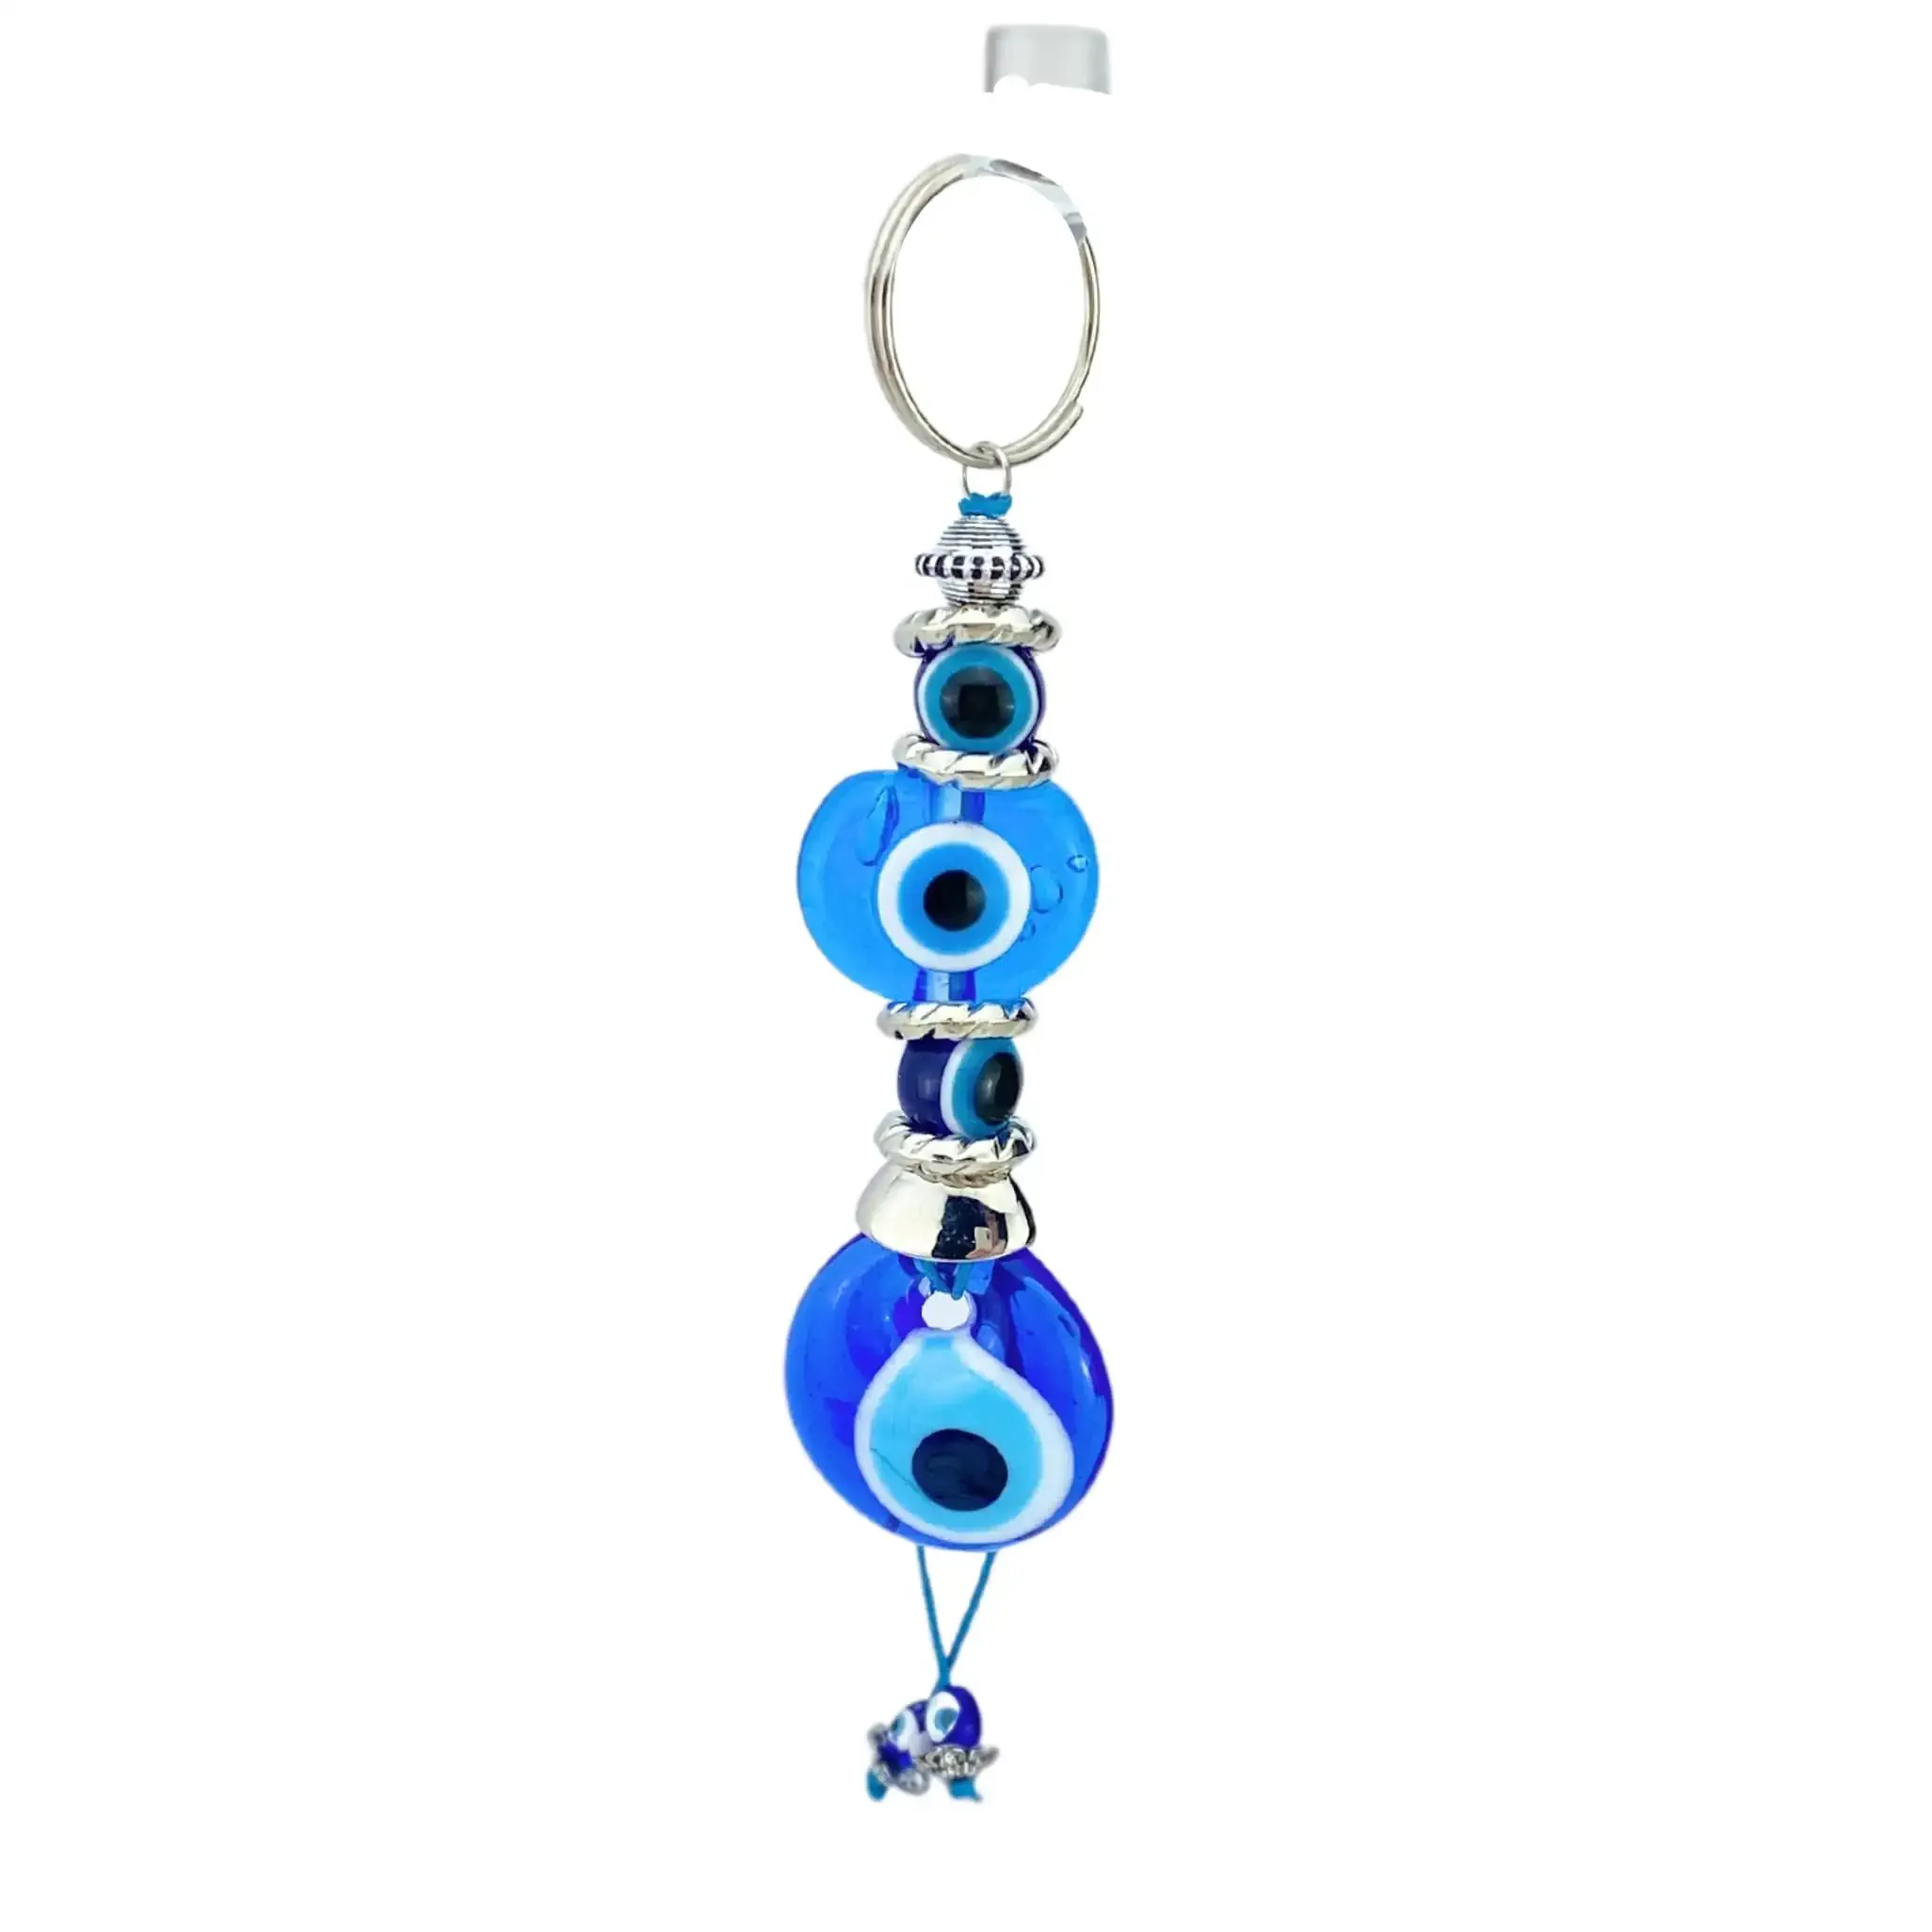 3ml gold with blue evil eye crystal keychain angels tears key ring rhinestone key ring handbags purse bag car pendant decoration